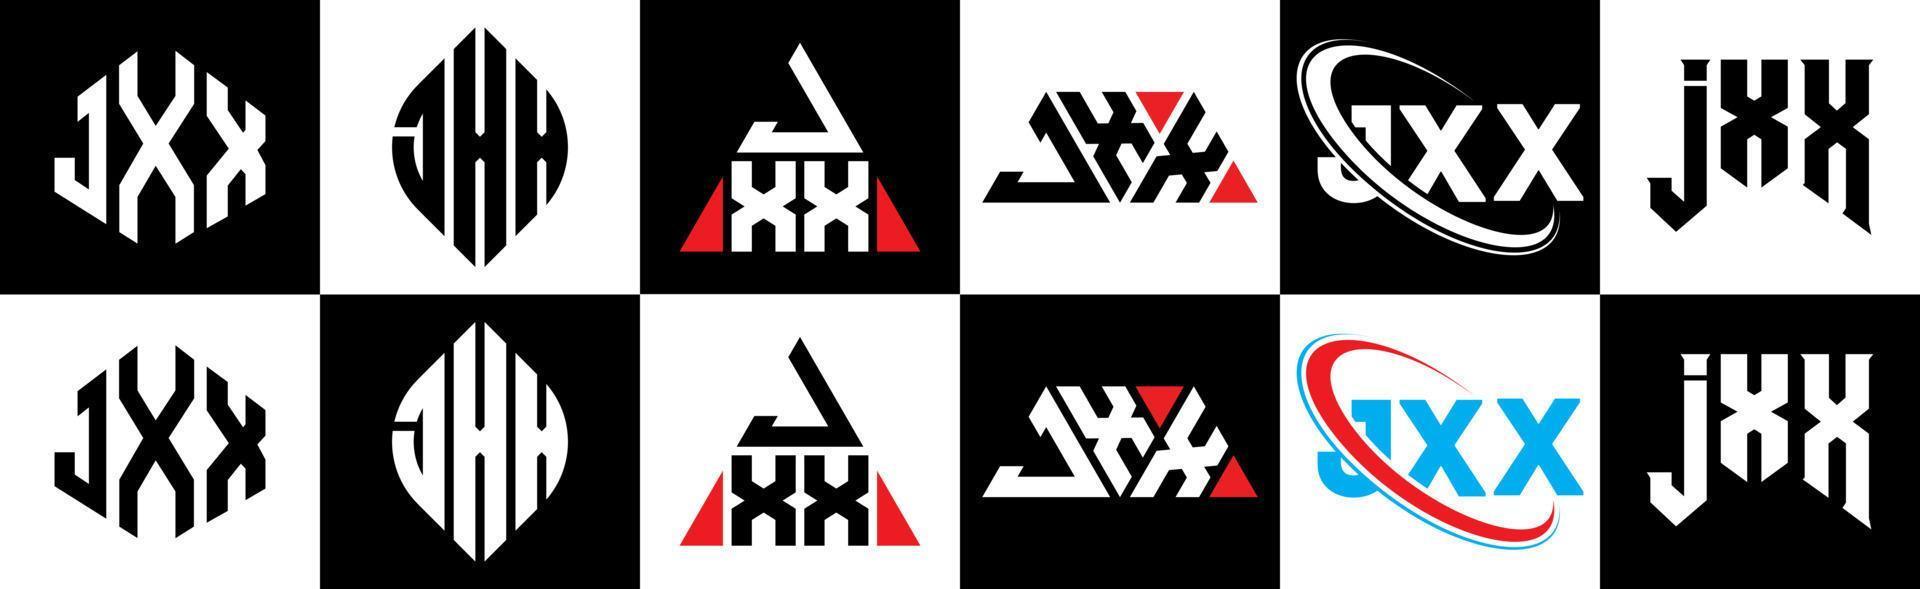 création de logo de lettre jxx en six styles. jxx polygone, cercle, triangle, hexagone, style plat et simple avec logo de lettre de variation de couleur noir et blanc dans un plan de travail. jxx logo minimaliste et classique vecteur